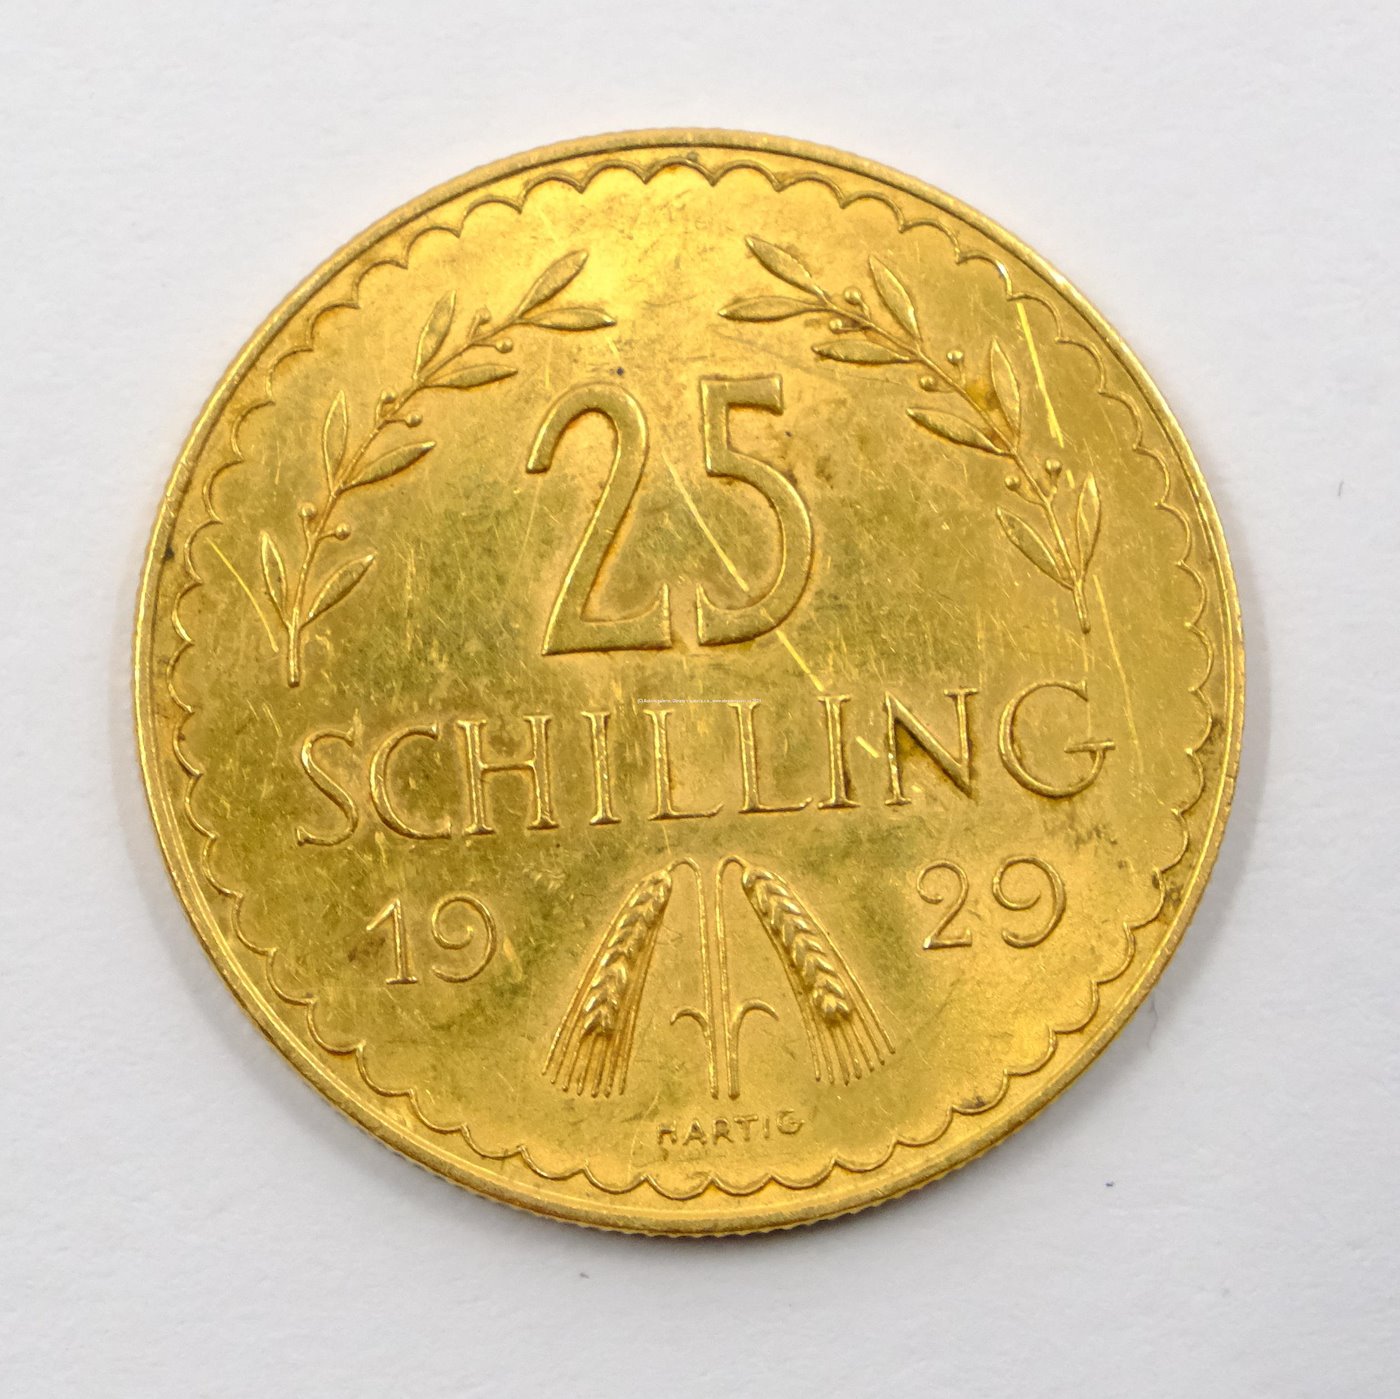 .. - Zlatá mince Rakouská republika . 25 Schilling rok 1929.Zlato 900/1000 hrubá hmotnost 5,881g